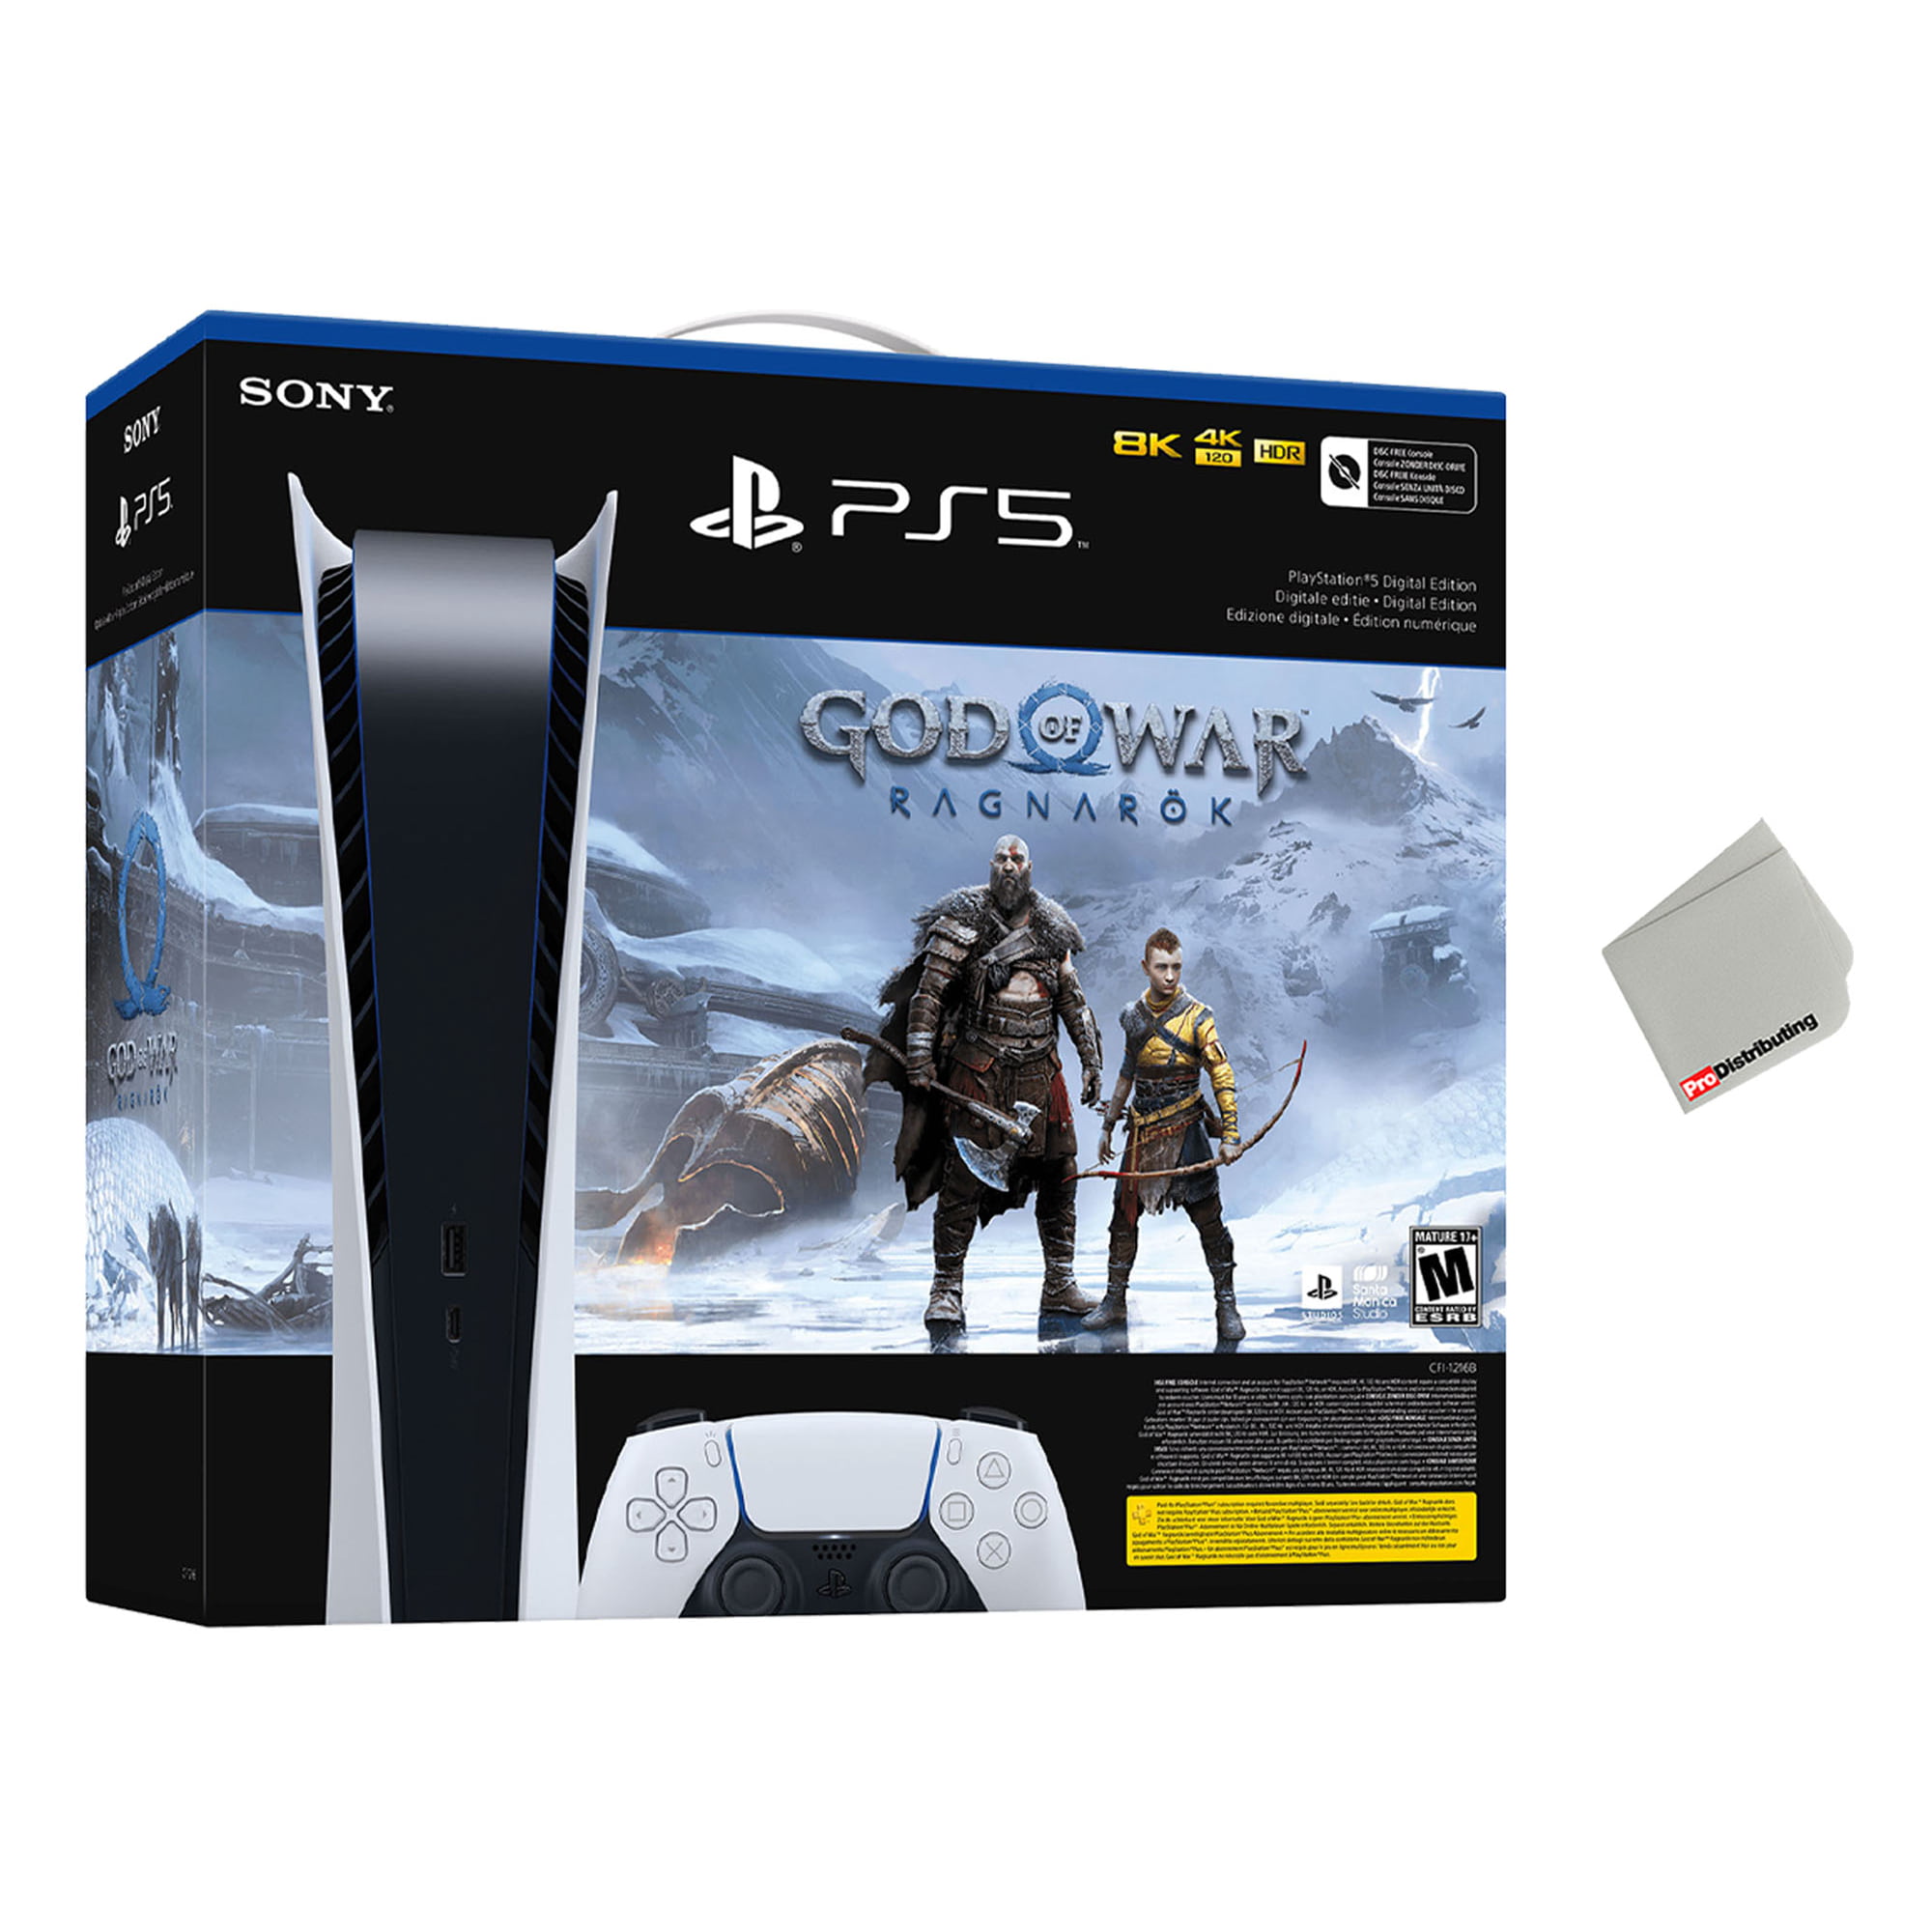 Sony Playstation 5 Digital Edition God of War Ragnar k Bundle with